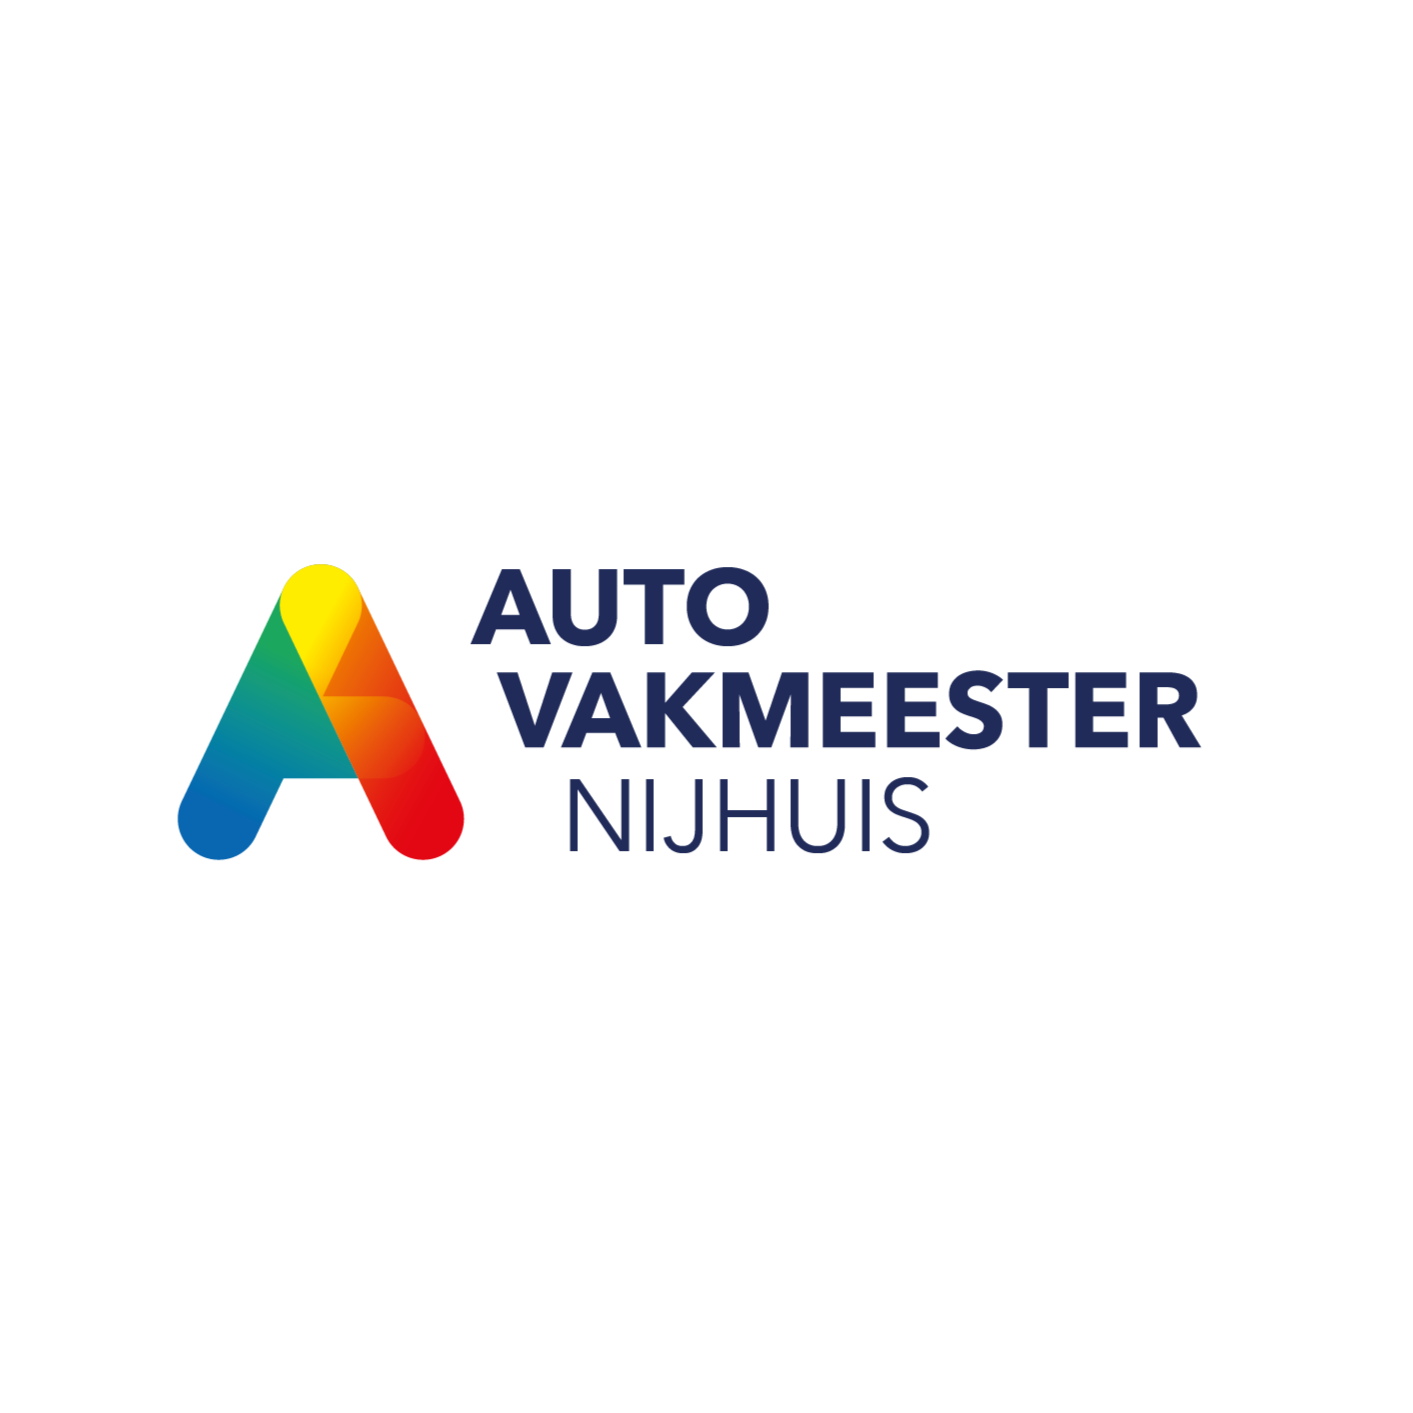 Autobedrijf Nijhuis | Autovakmeester Logo